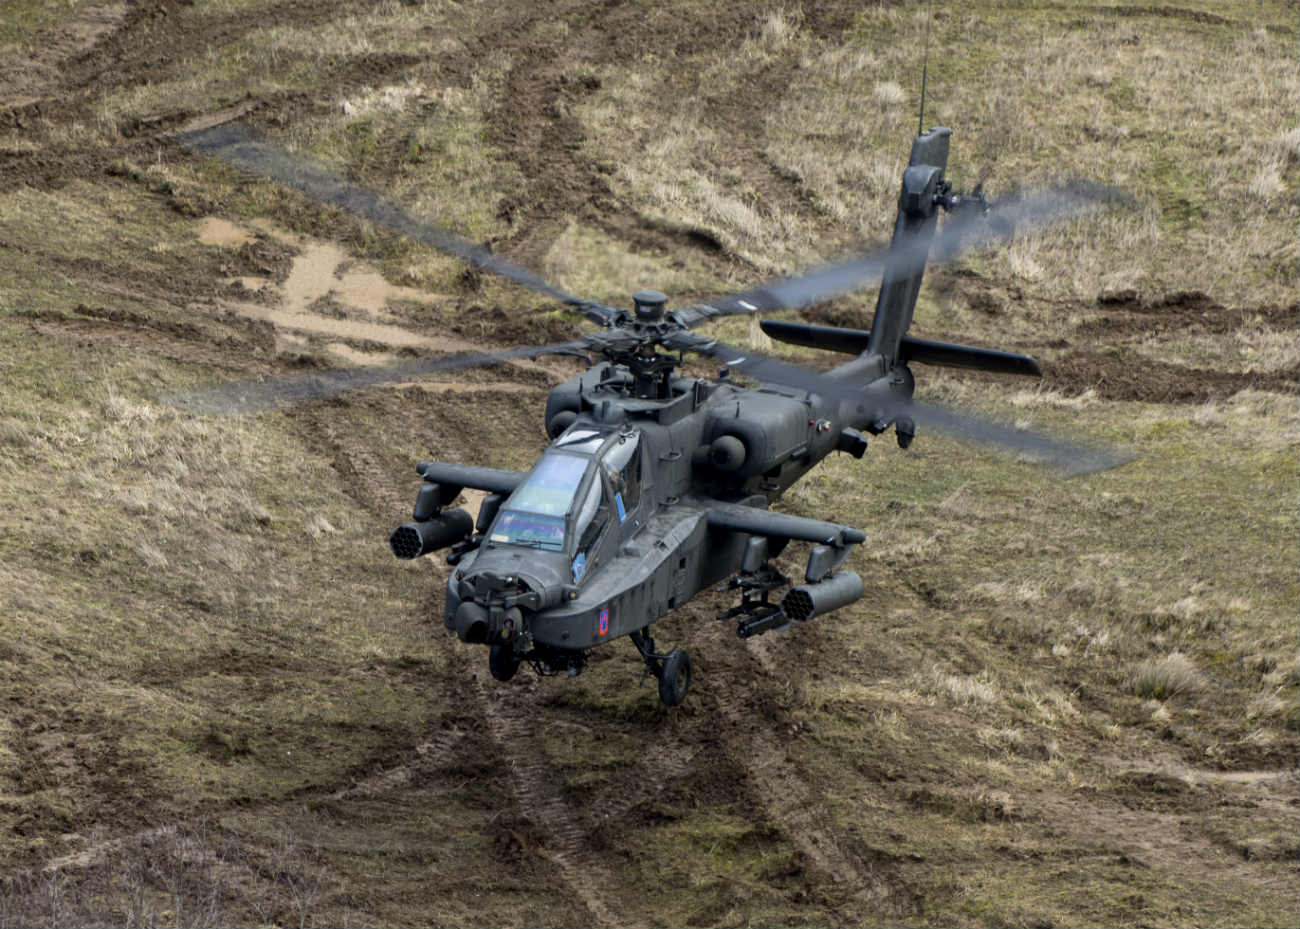 AH-64 Apache aircraft landing